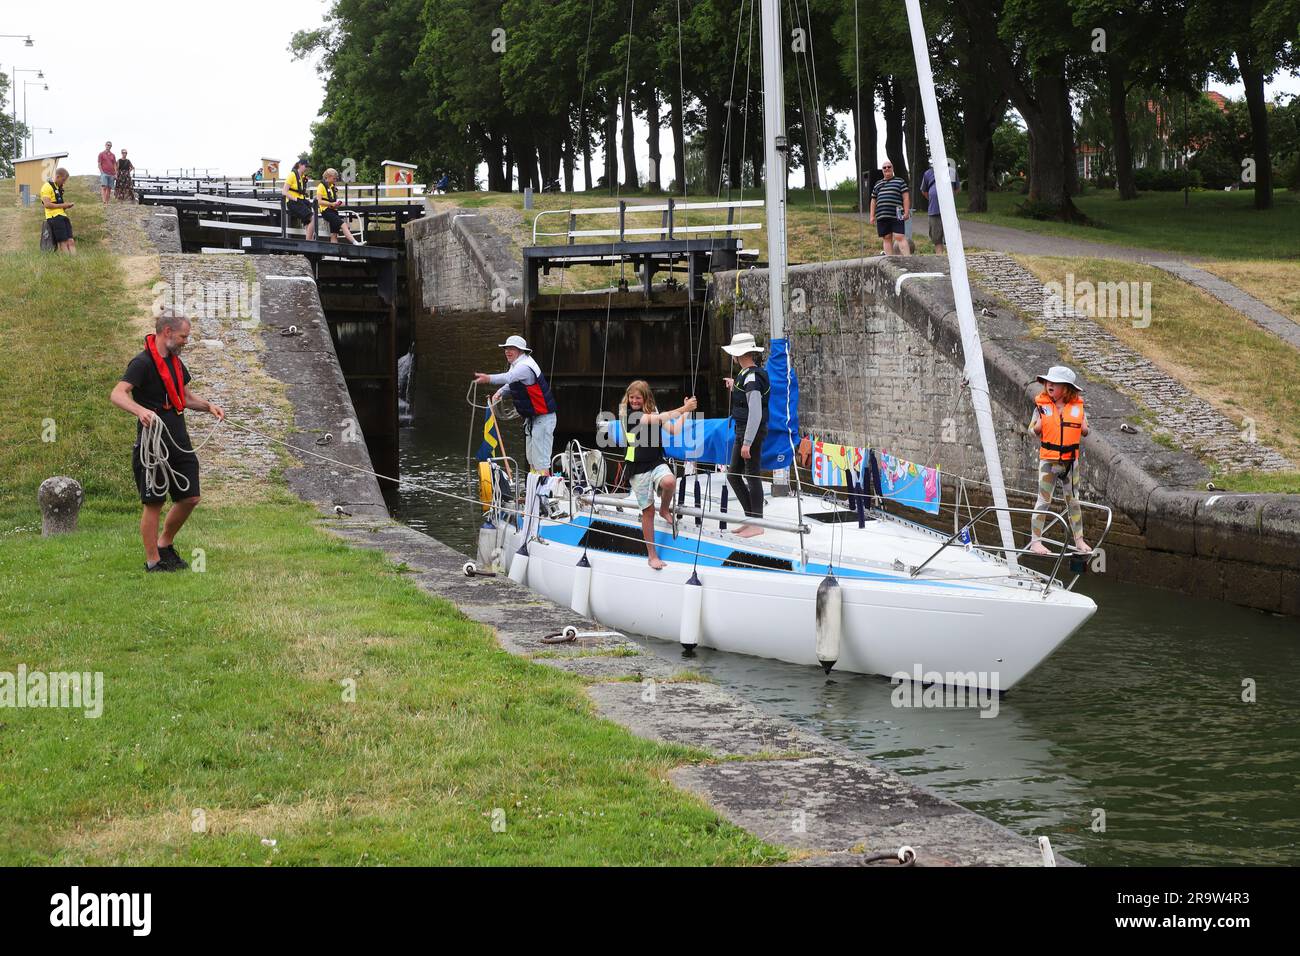 Berg, Suède - 27 juin 2023: Un bateau de loisirs avec une famille Voyage le canal de Gota verrouillage en aval dans les écluses de Berg. Banque D'Images